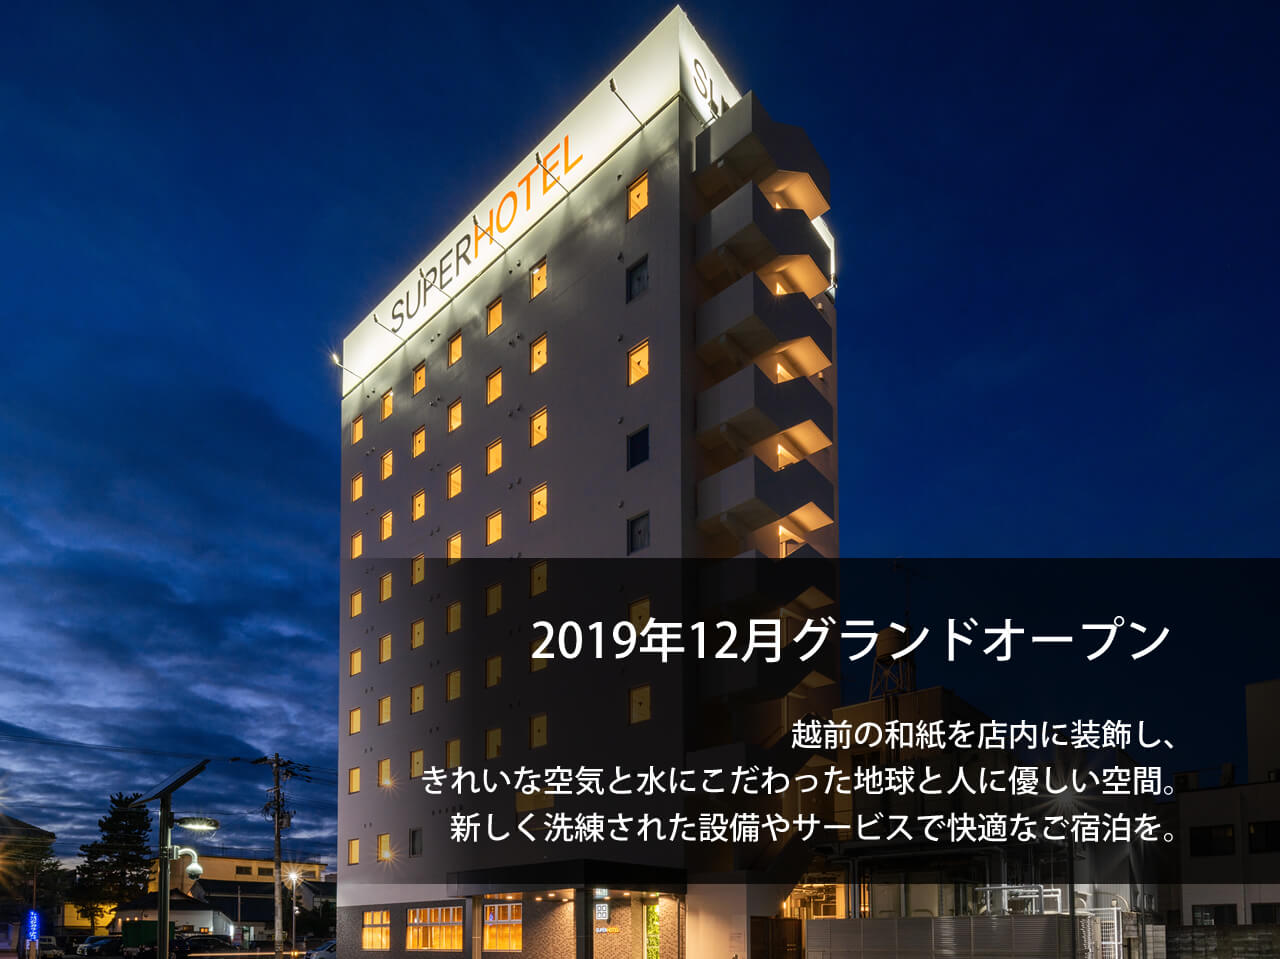 Super Hotel Echizen, Takefu